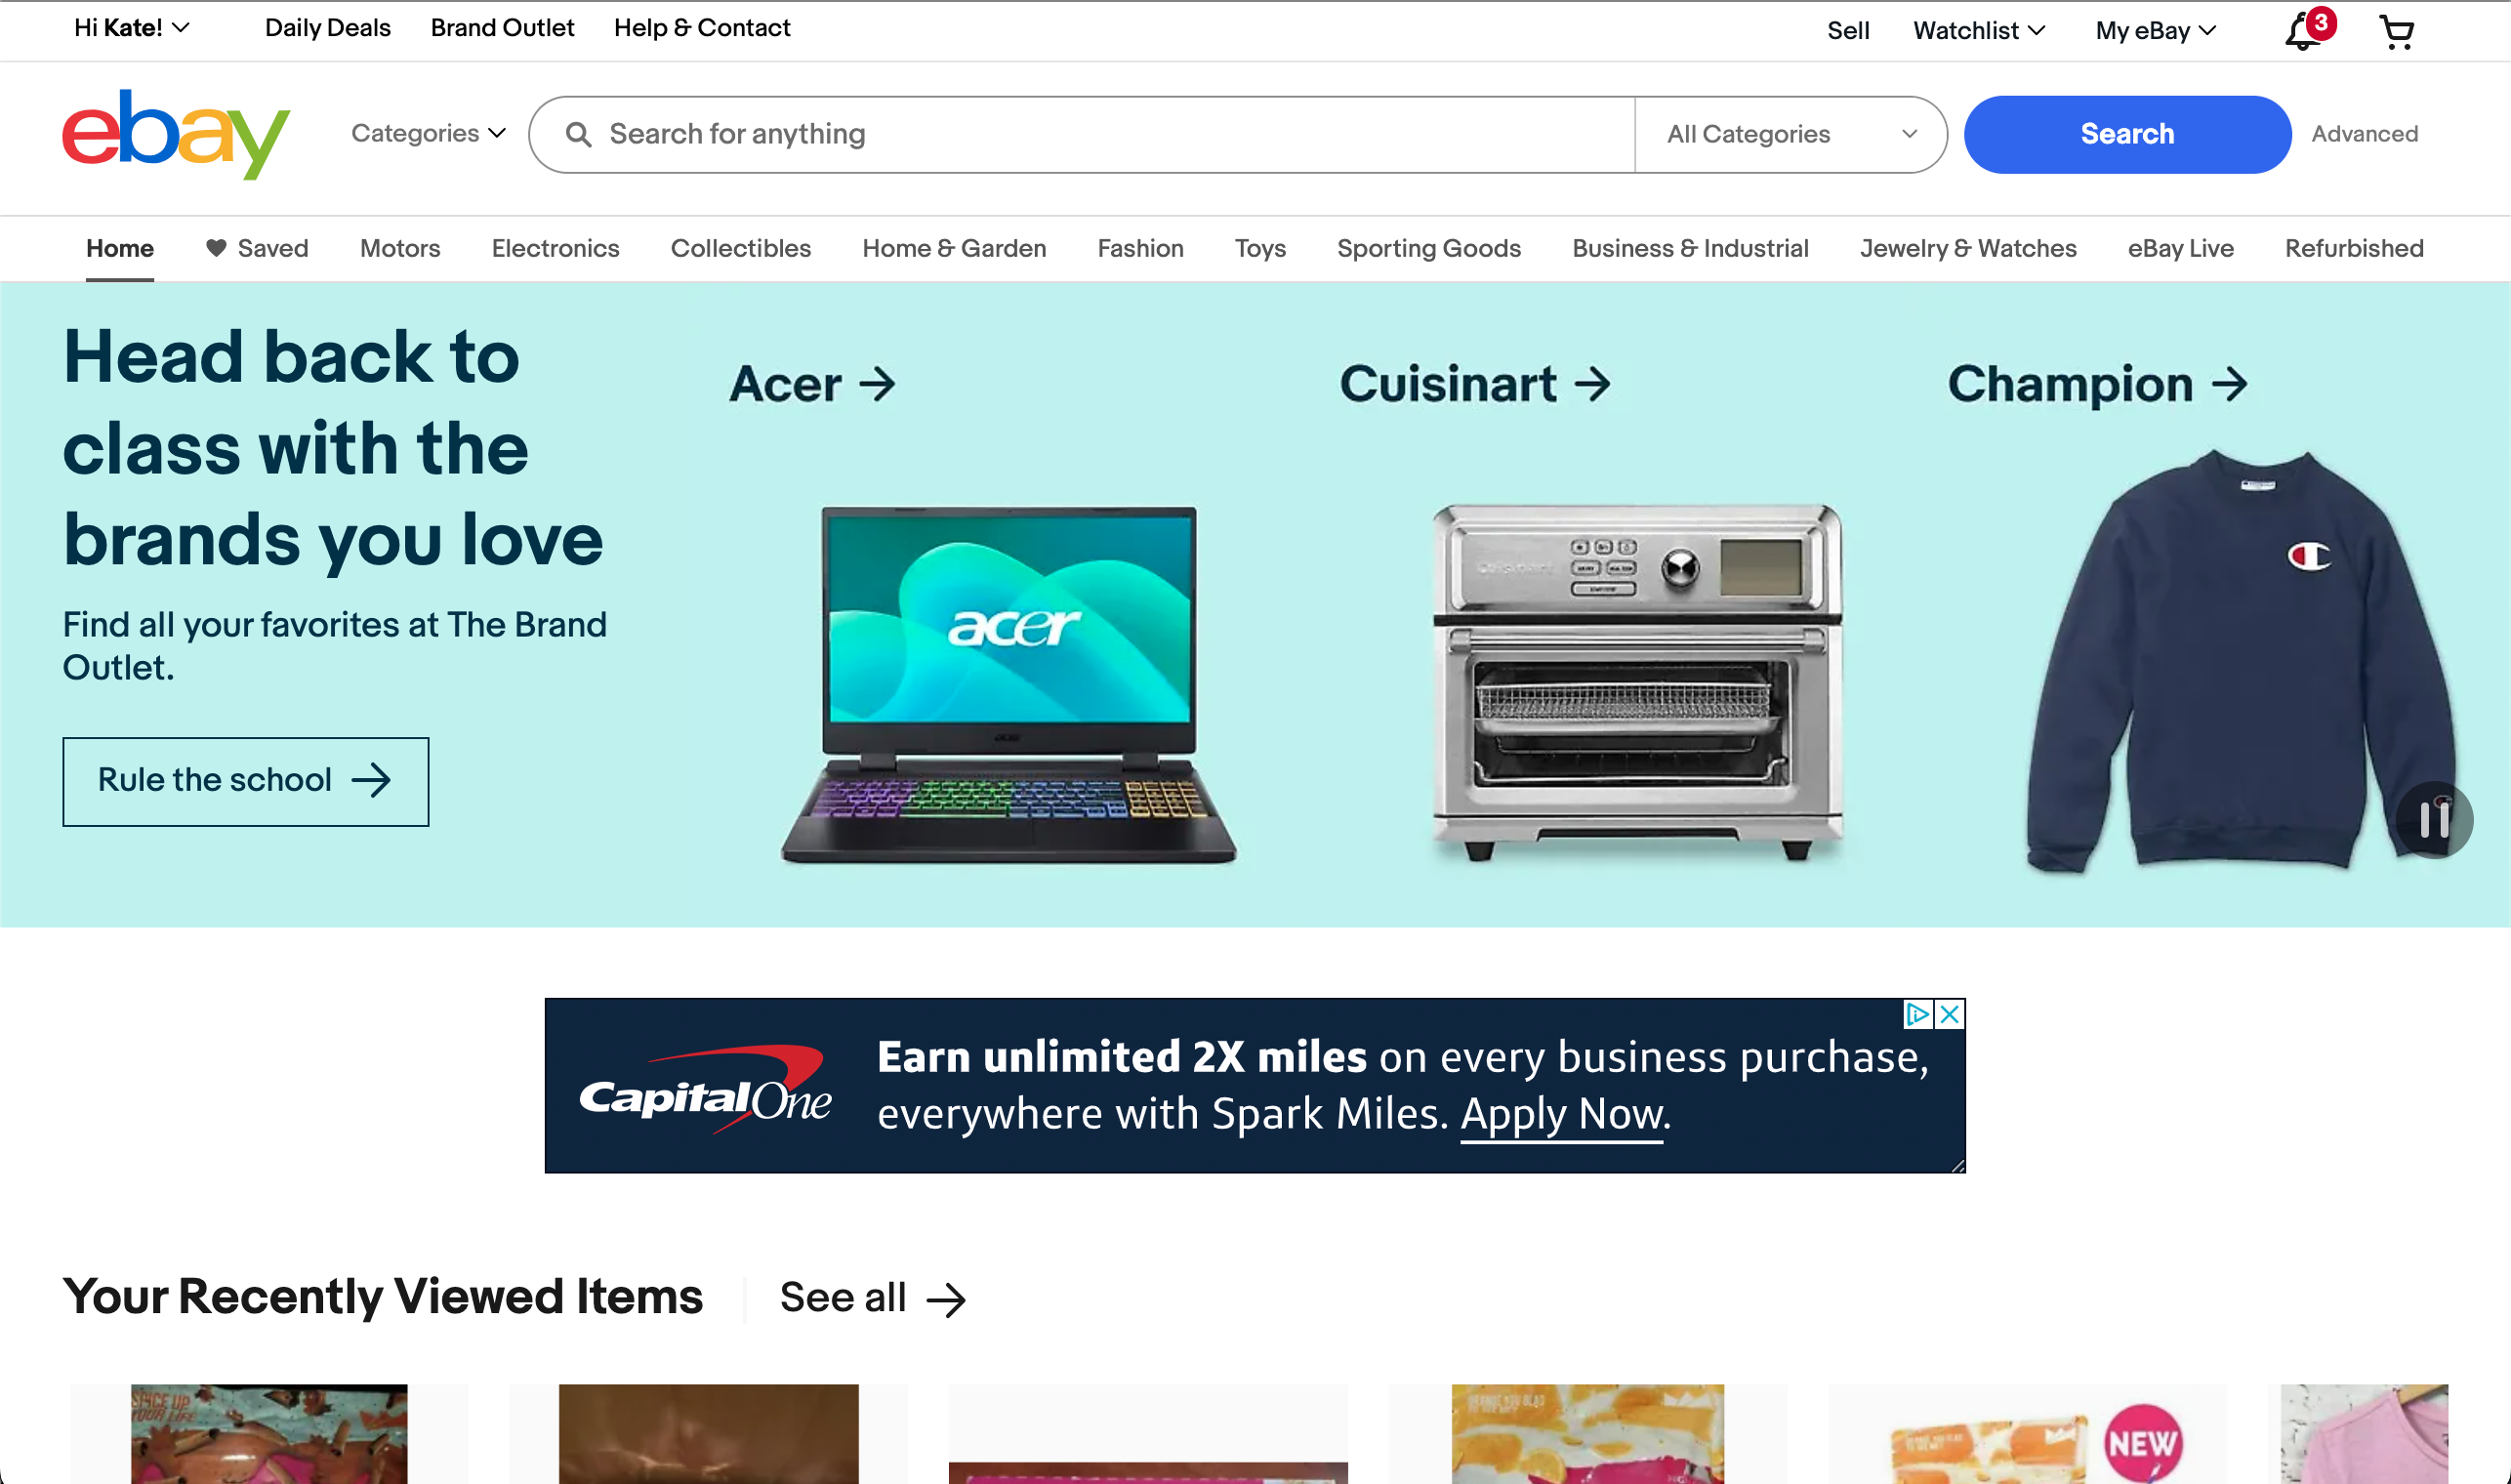 Ebay's complex e-commerce homepage.